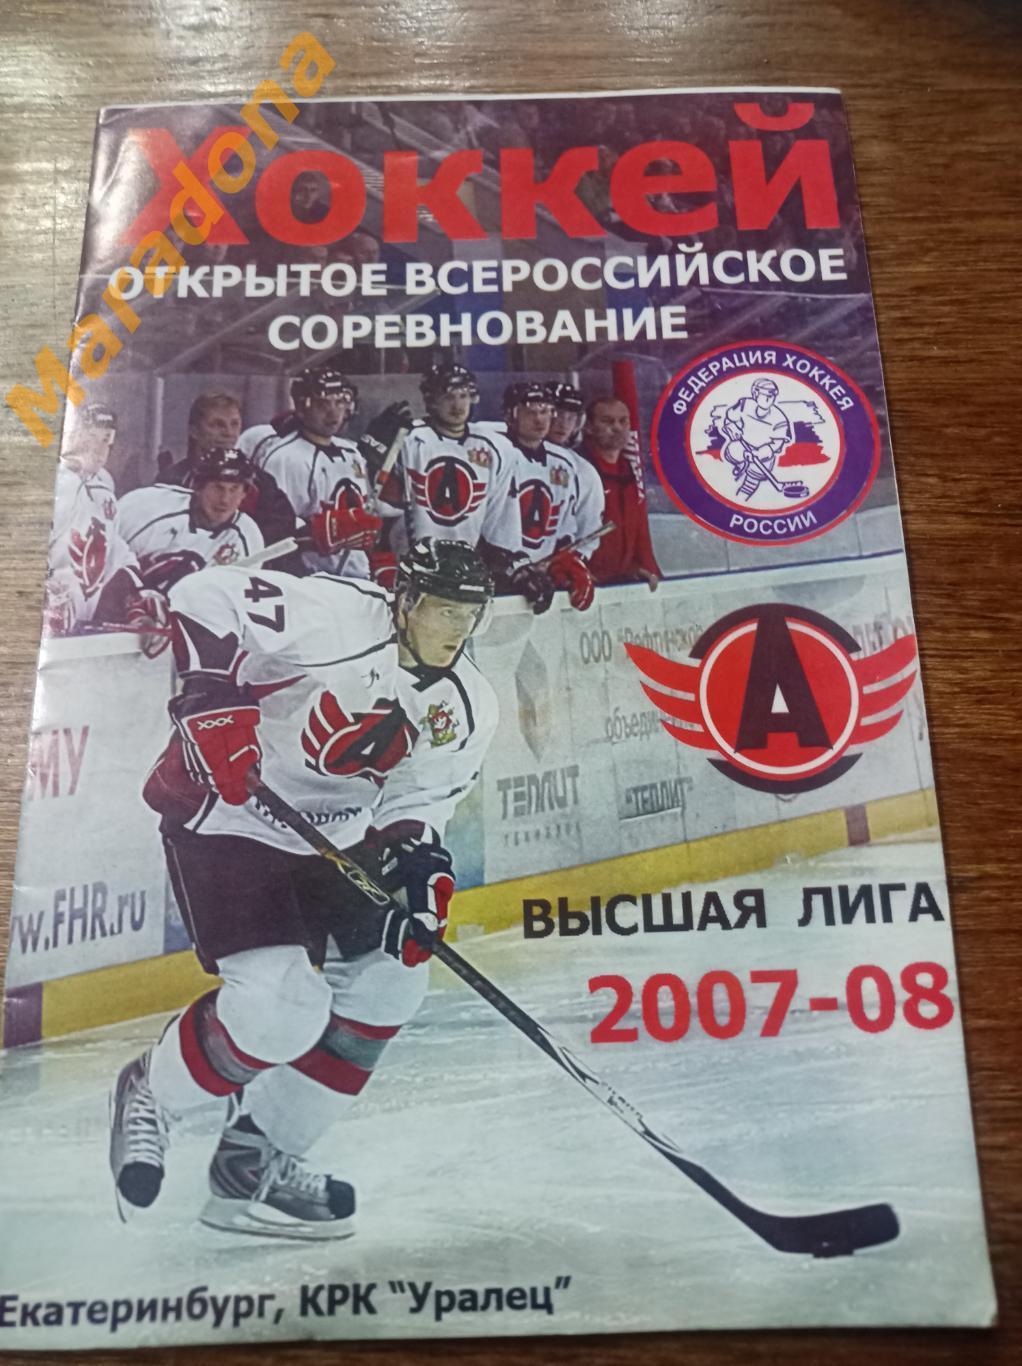 Автомобилист Екатеринбург - Нефтяник Альметьевск 2007/2008 Плей-офф